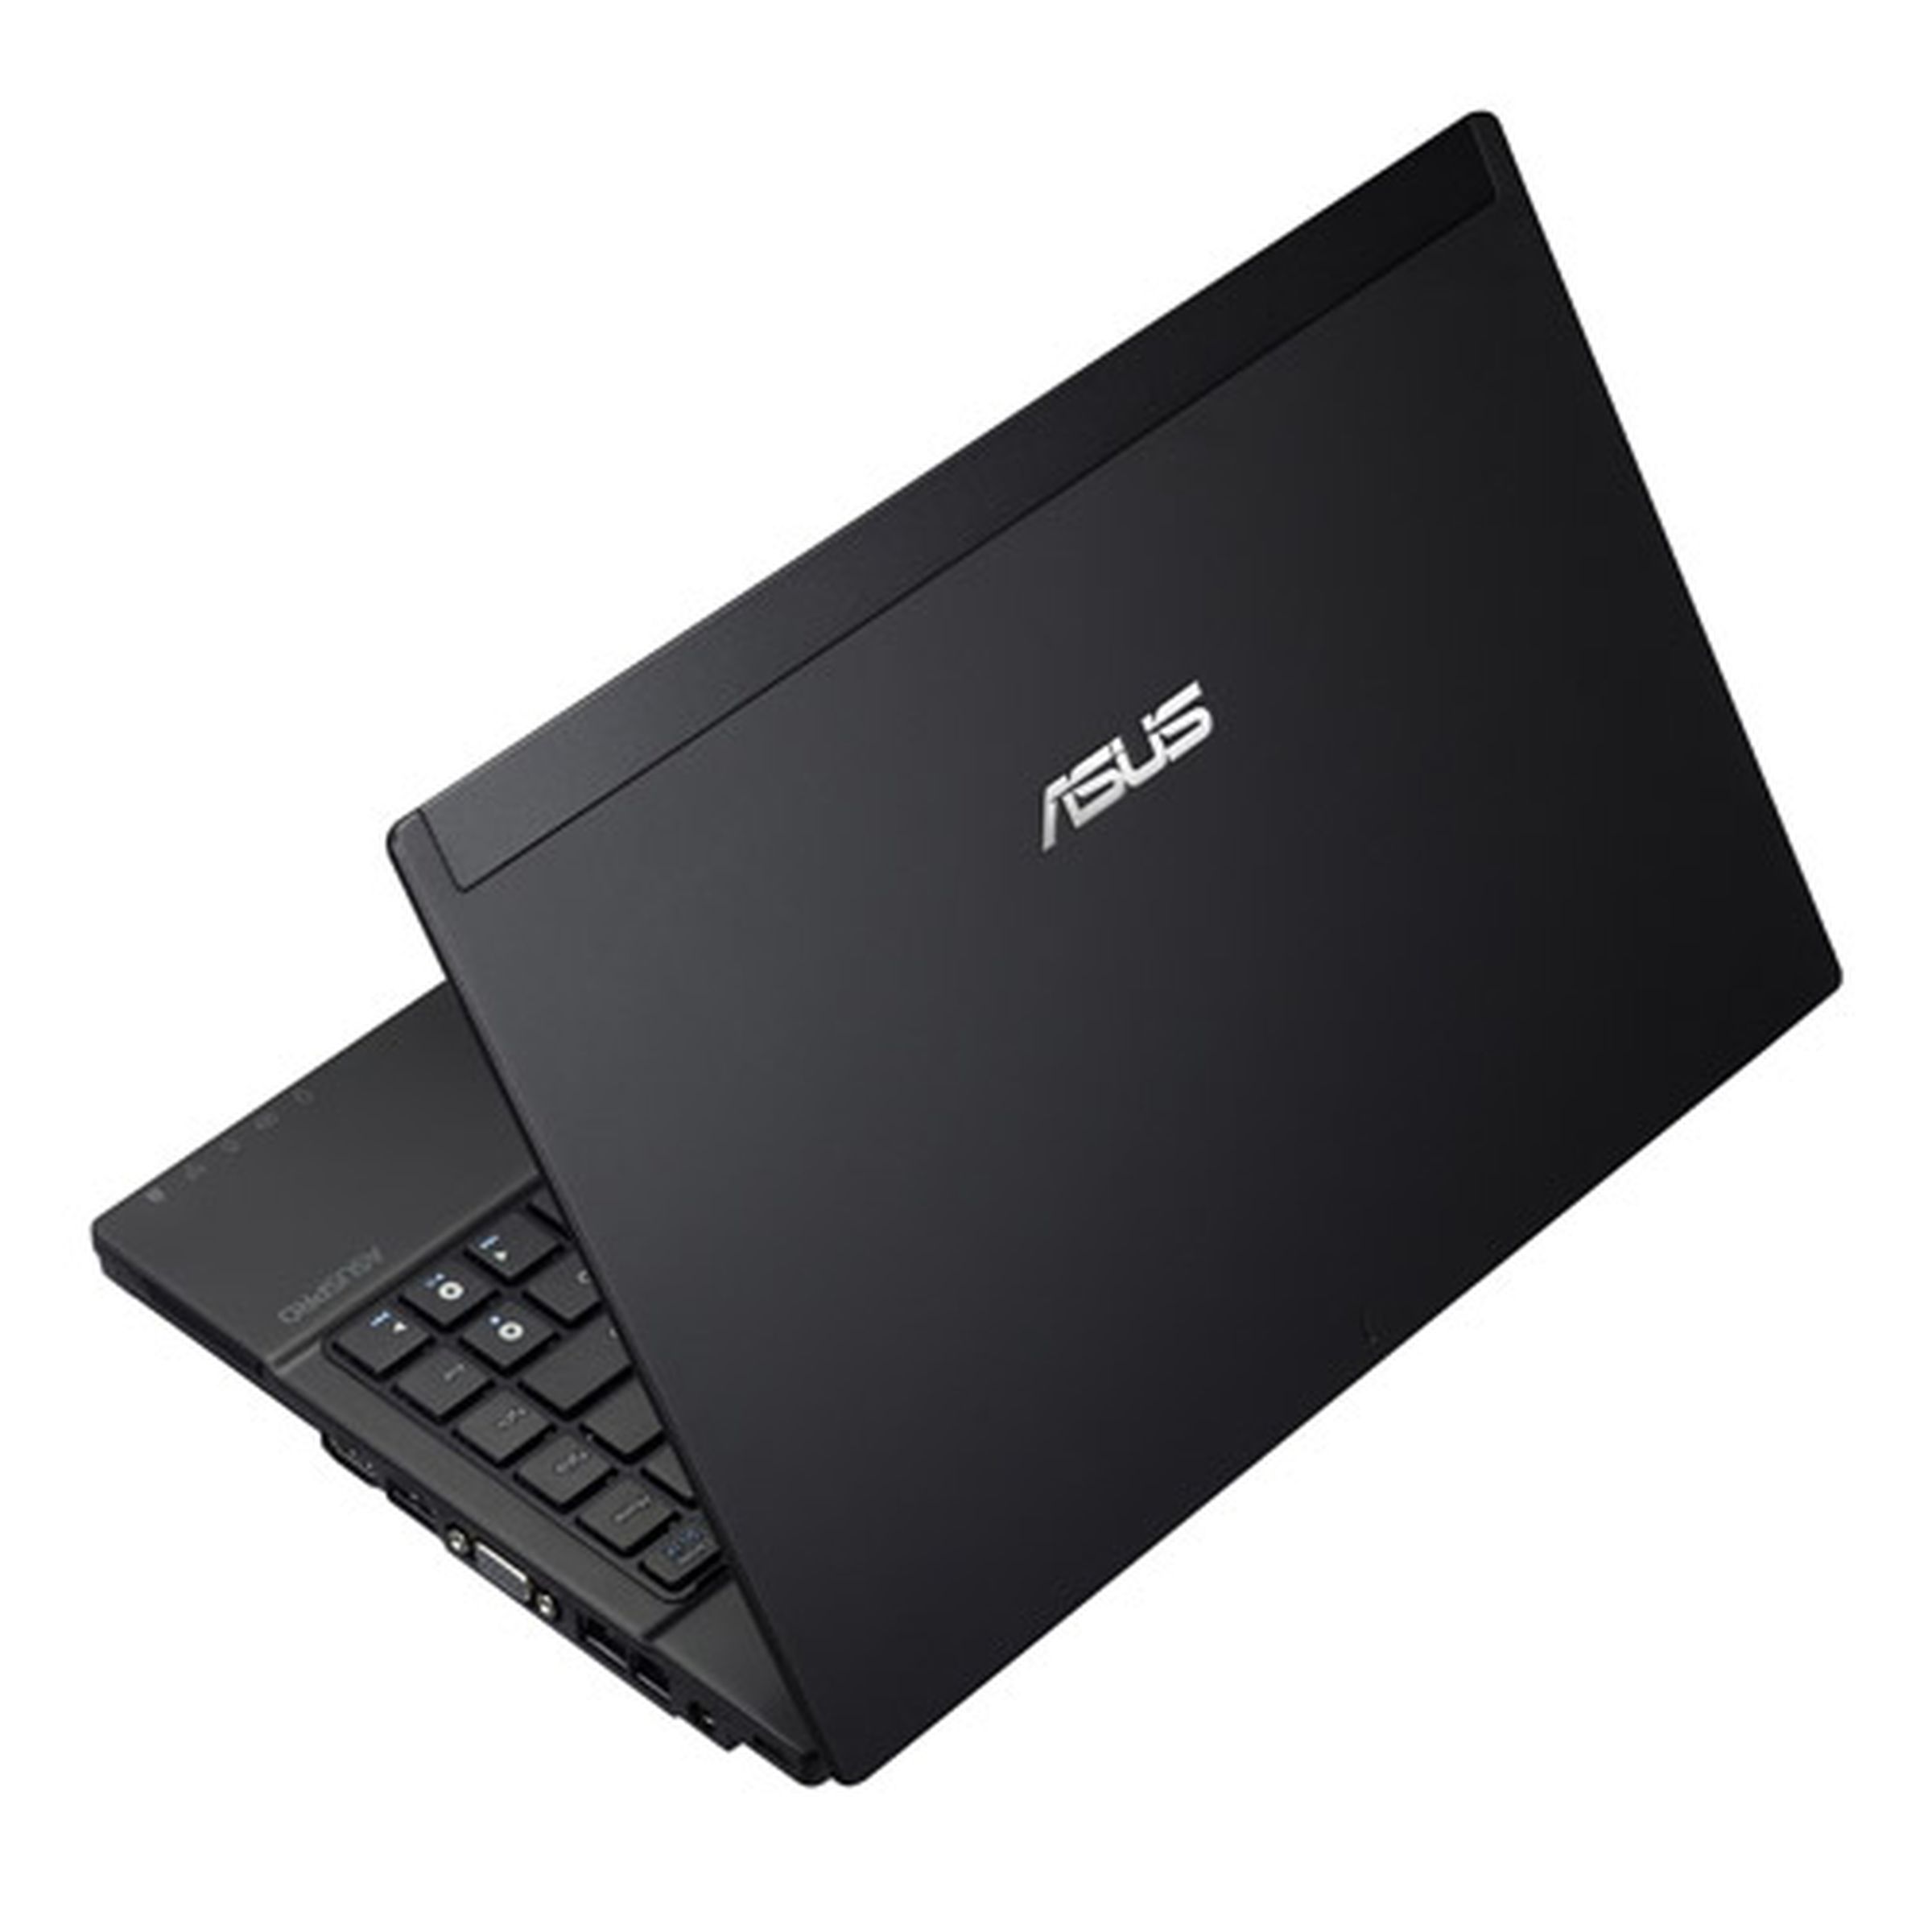 Asus B23E laptop press images